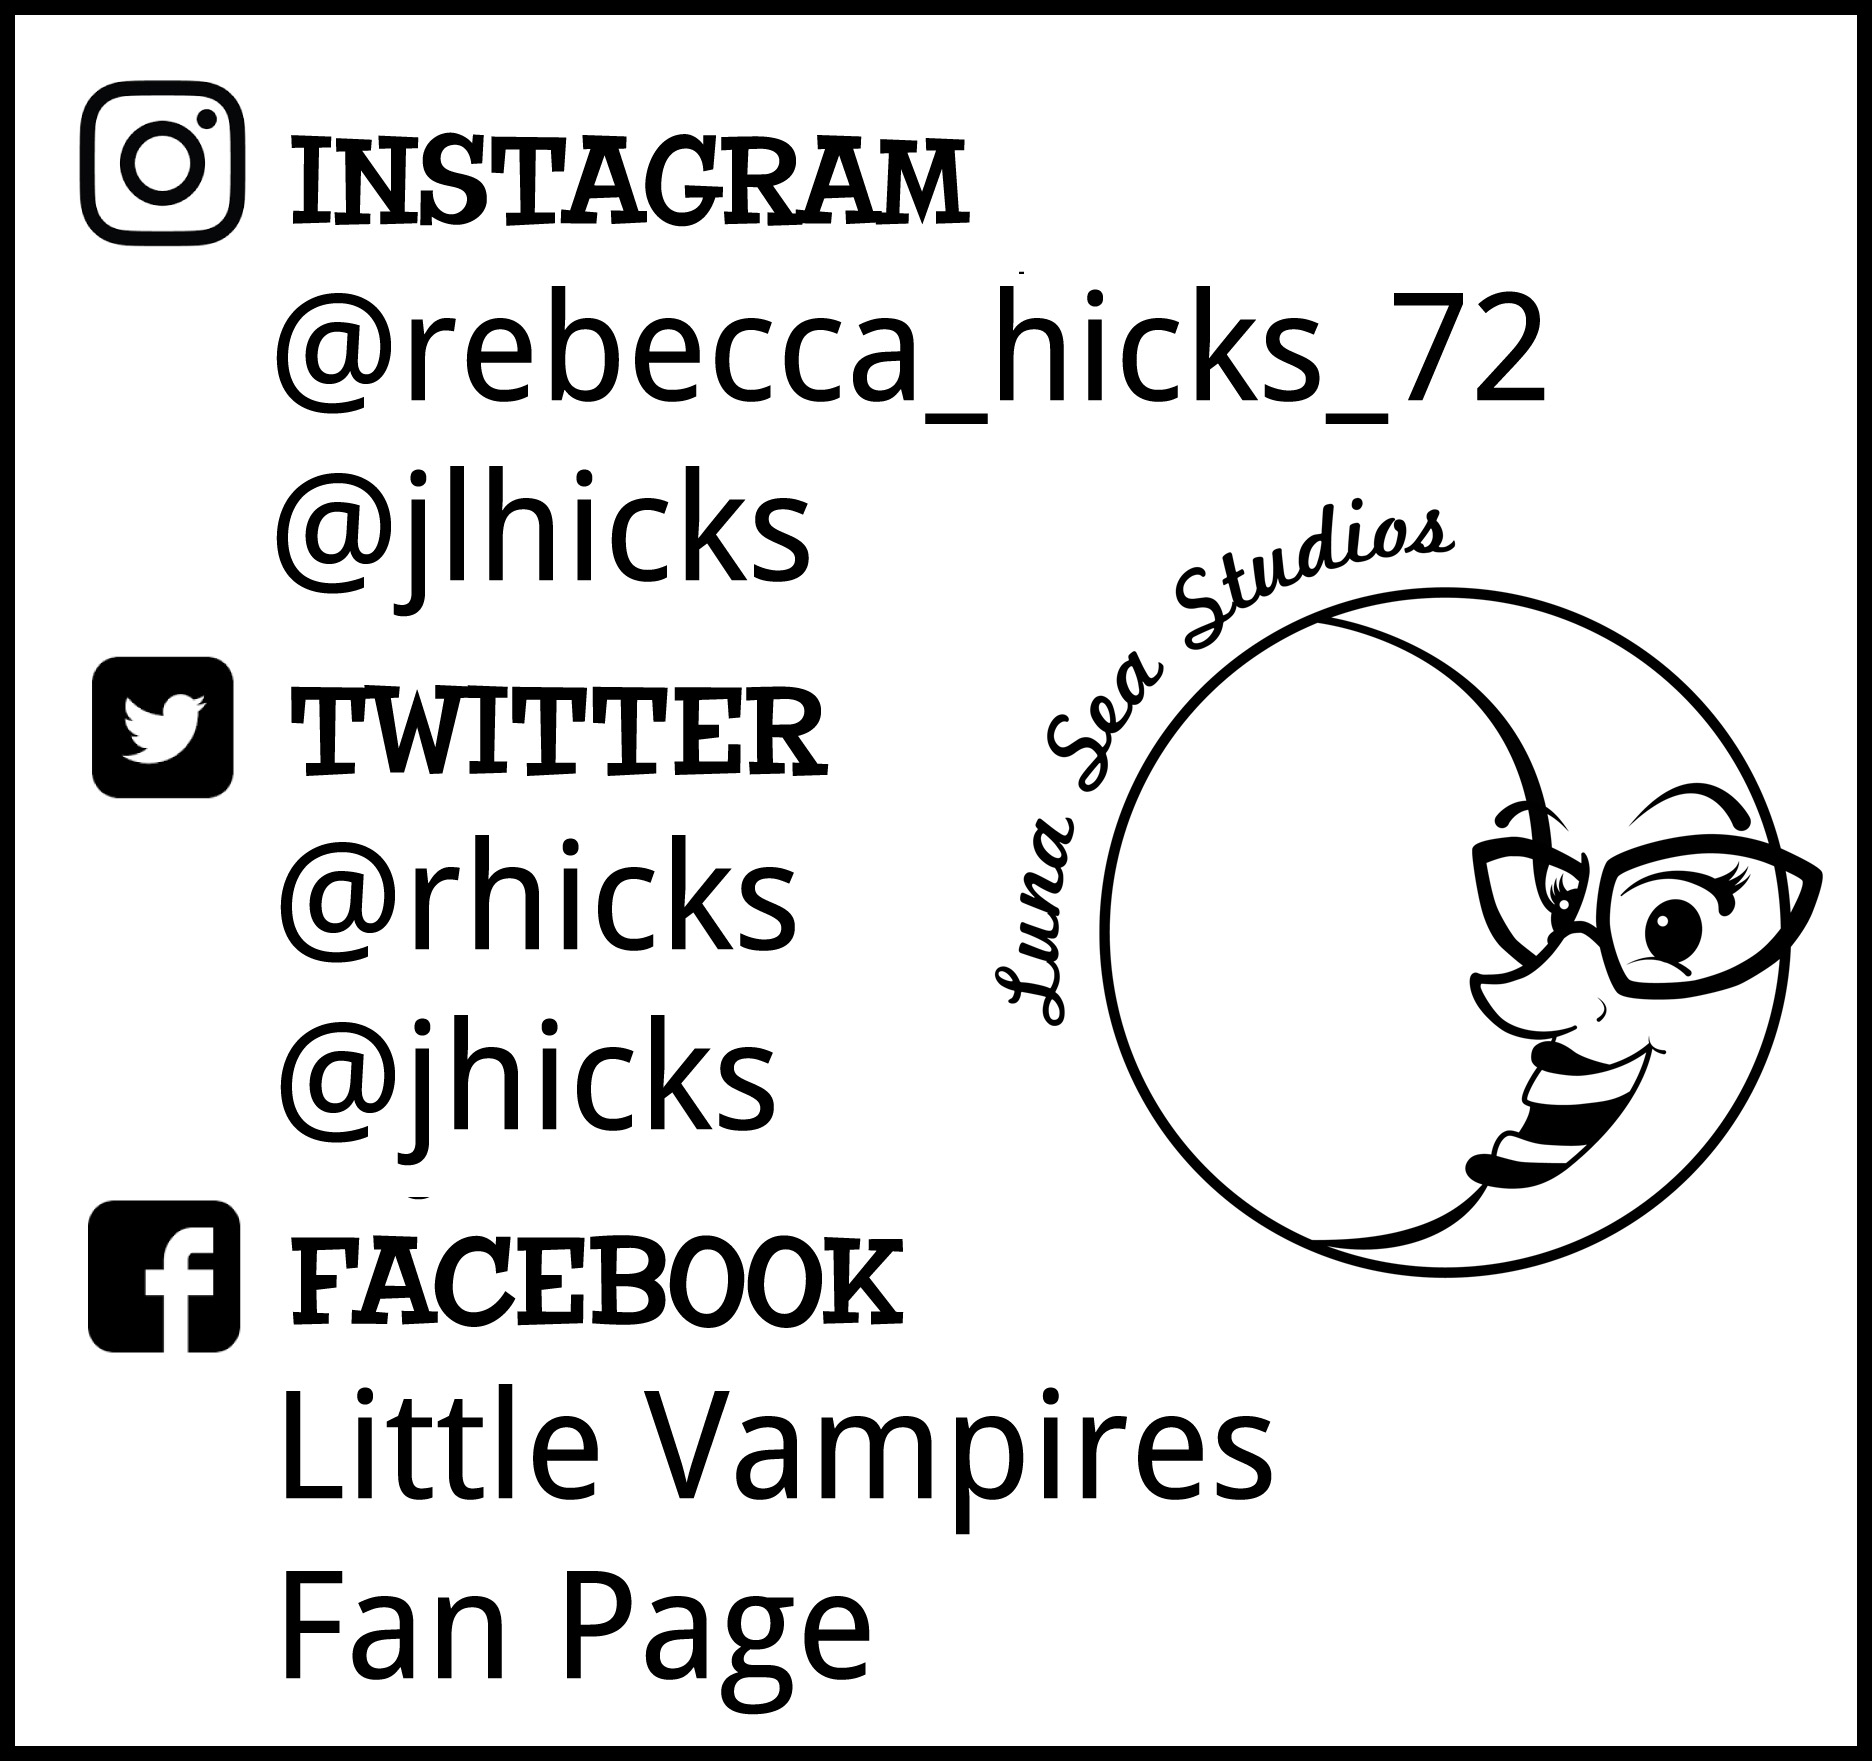 Promotional image for Little Vampires on social media